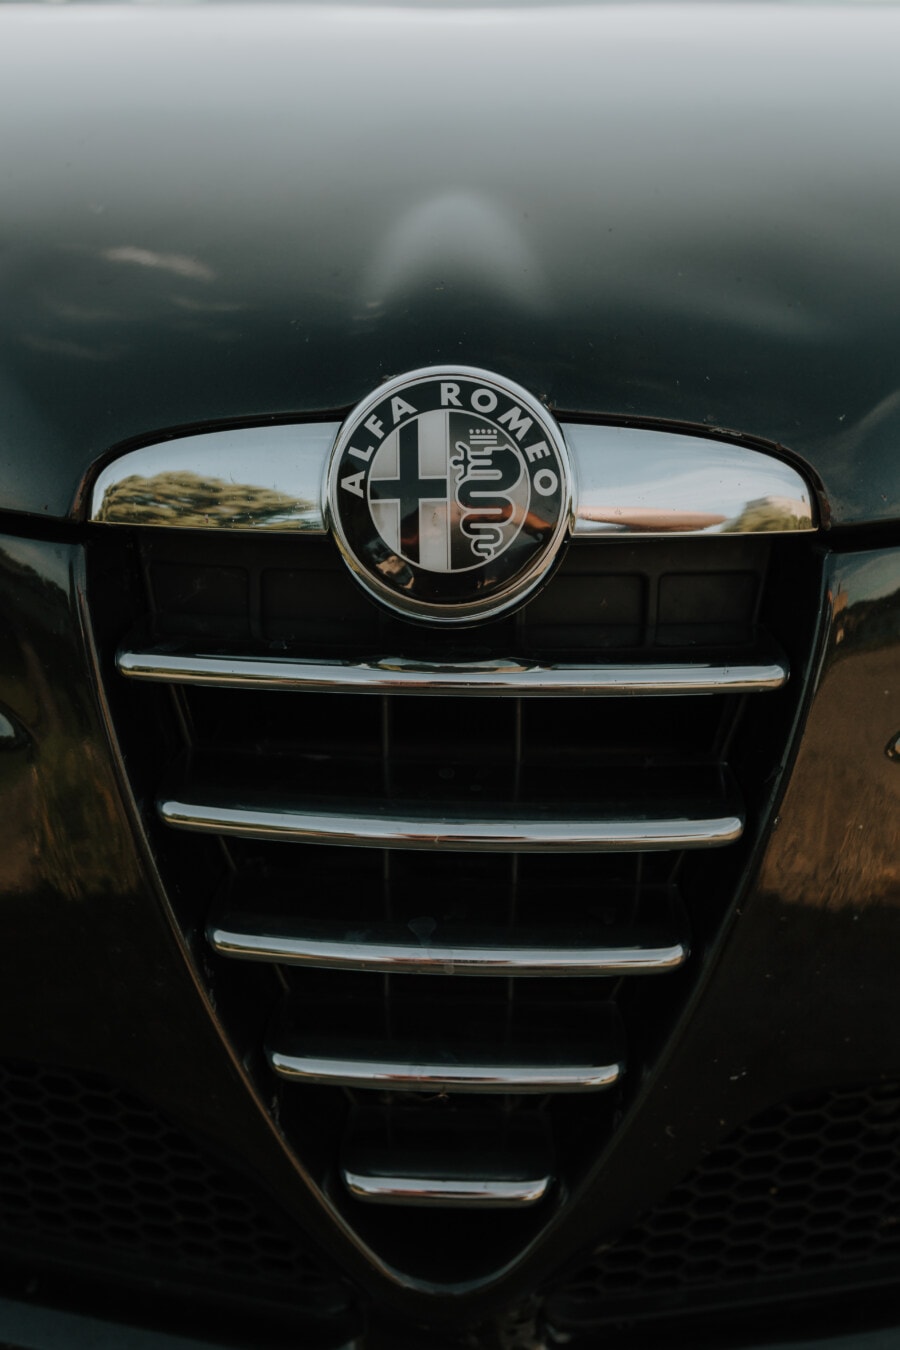 merkki, Alfa Romeo, symboli, musta ja valkoinen, kromi, tyylikäs, metallinen, auton, auto, ajoneuvon